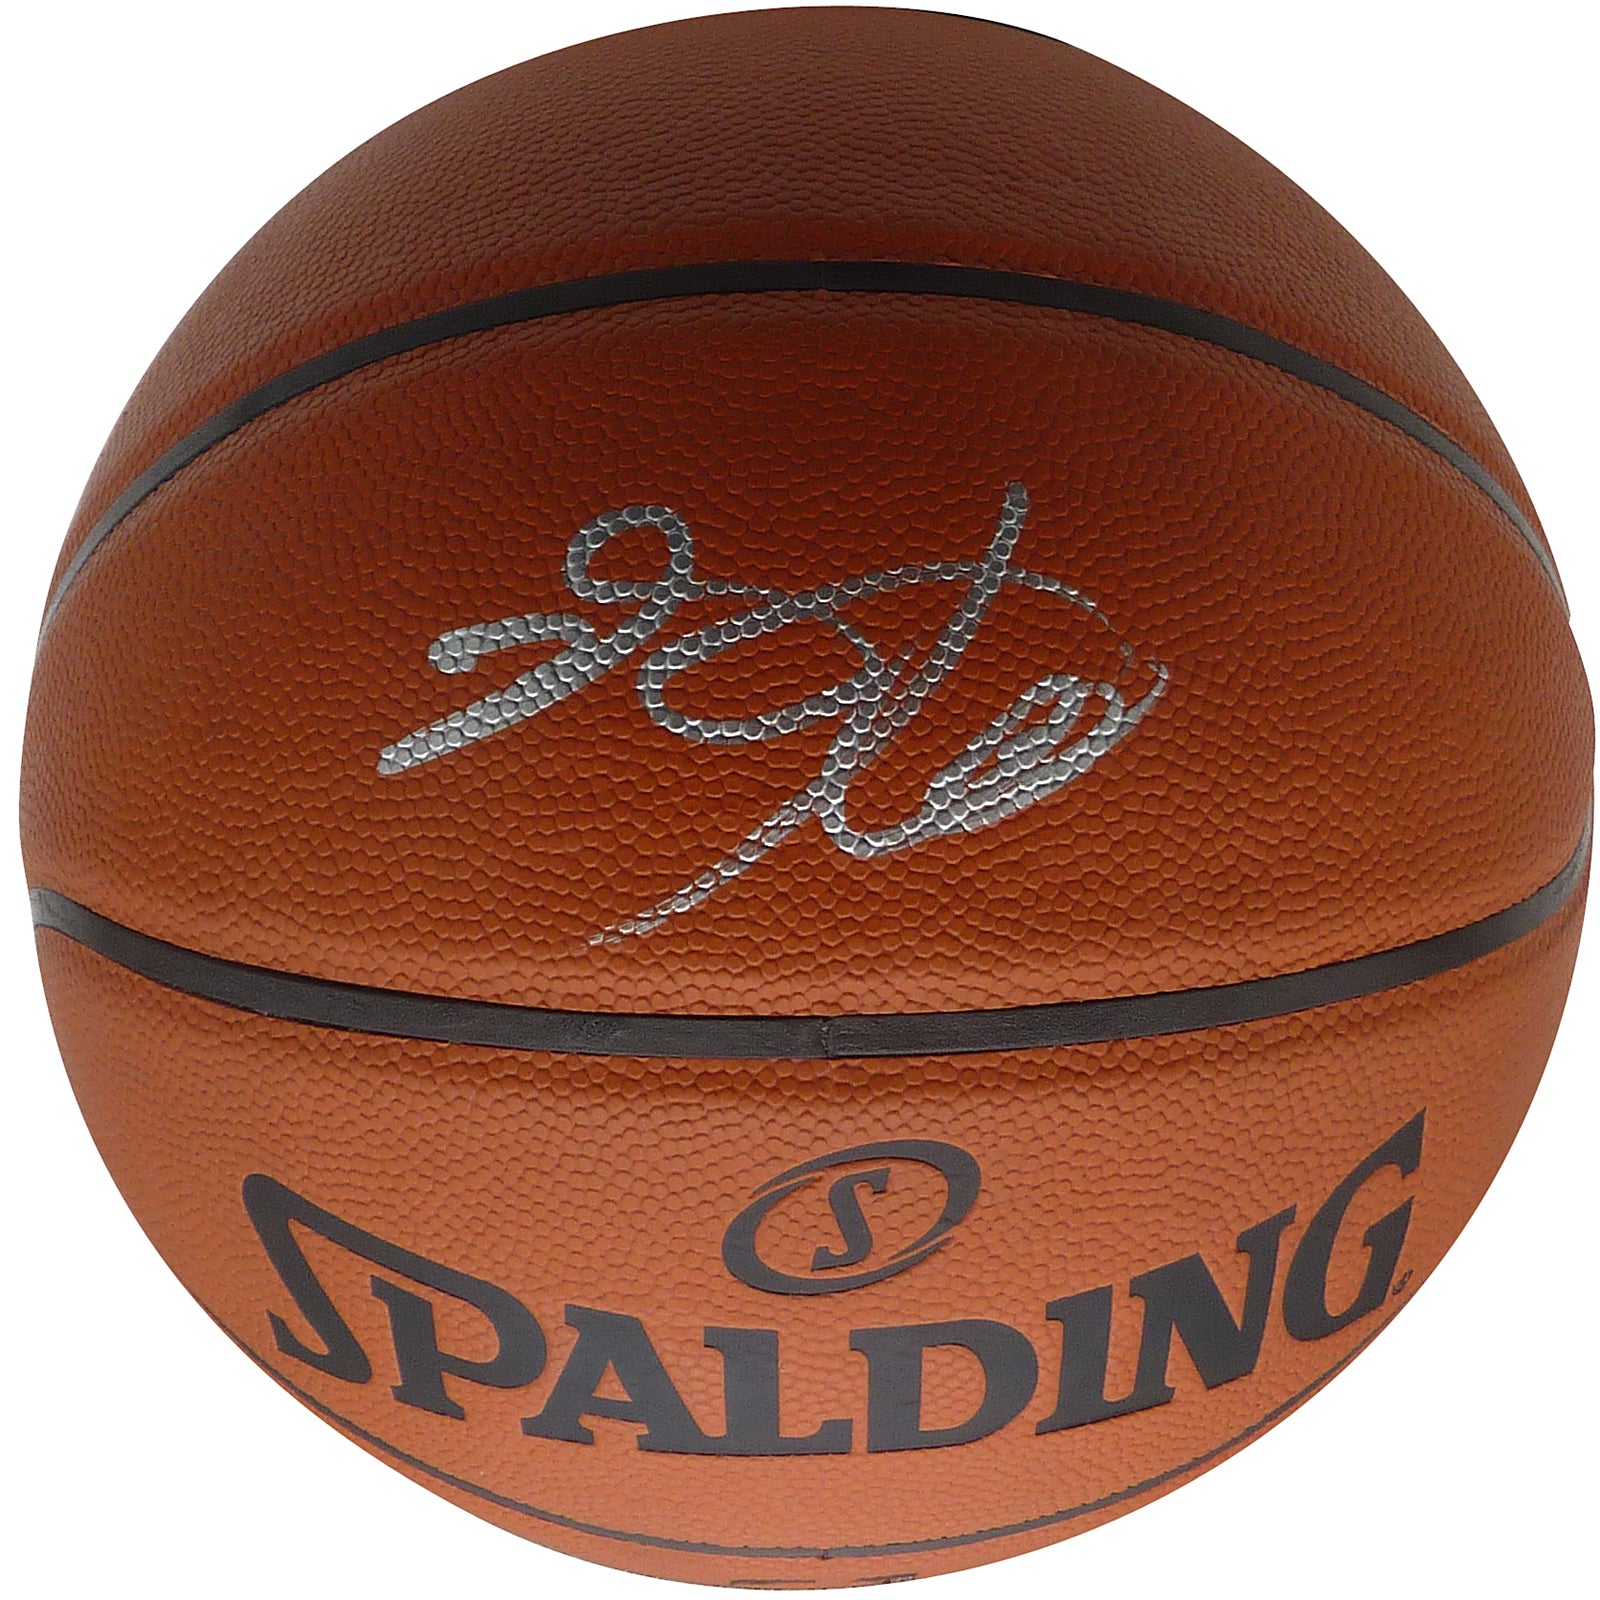 De'Aaron Fox Autographed NBA Basketball - Beckett